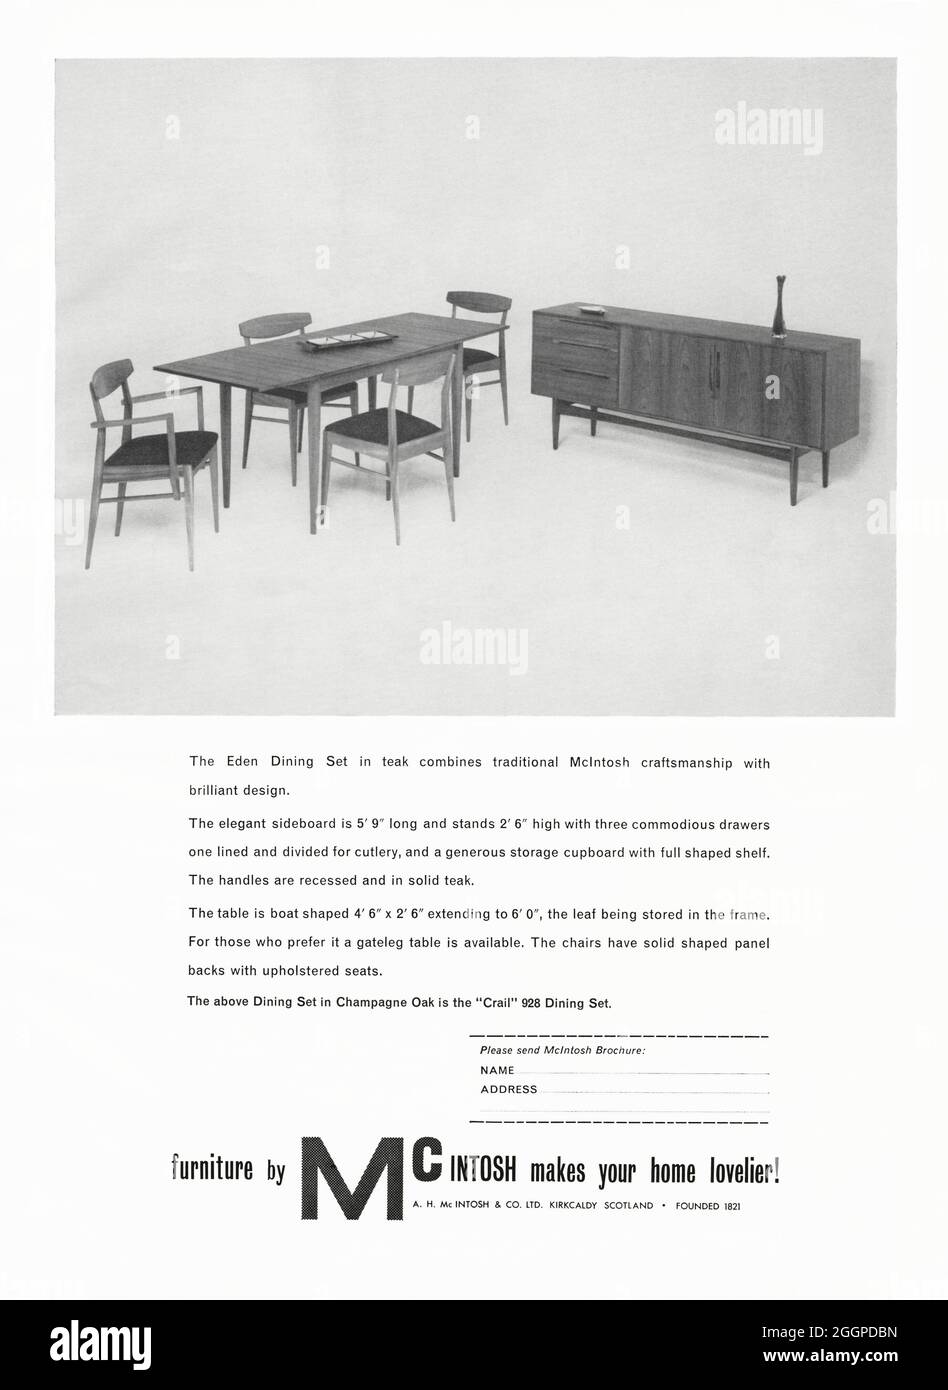 Un annuncio degli anni '60 per McIntosh elegante, arredamento di metà secolo di Kirkcaldy, Scozia, Regno Unito. L'annuncio è apparso in una rivista pubblicata nel Regno Unito nell'ottobre 1962. Fotografato è un tavolo da pranzo e sedie più una tavola laterale. McIntosh, insieme al G Plan di High Wycombe, sono stati i due principali produttori di mobili da pranzo britannici della metà del secolo. McIntosh è stato fondato nel 1869 da Alexander Henry McIntosh (1835-1919) c'è ancora una grande presenza McIntosh a Kirkcaldy oggi come McIntosh è andato in mobili educativi e contract alla fine degli anni '80 - grafica vintage anni '60. Foto Stock